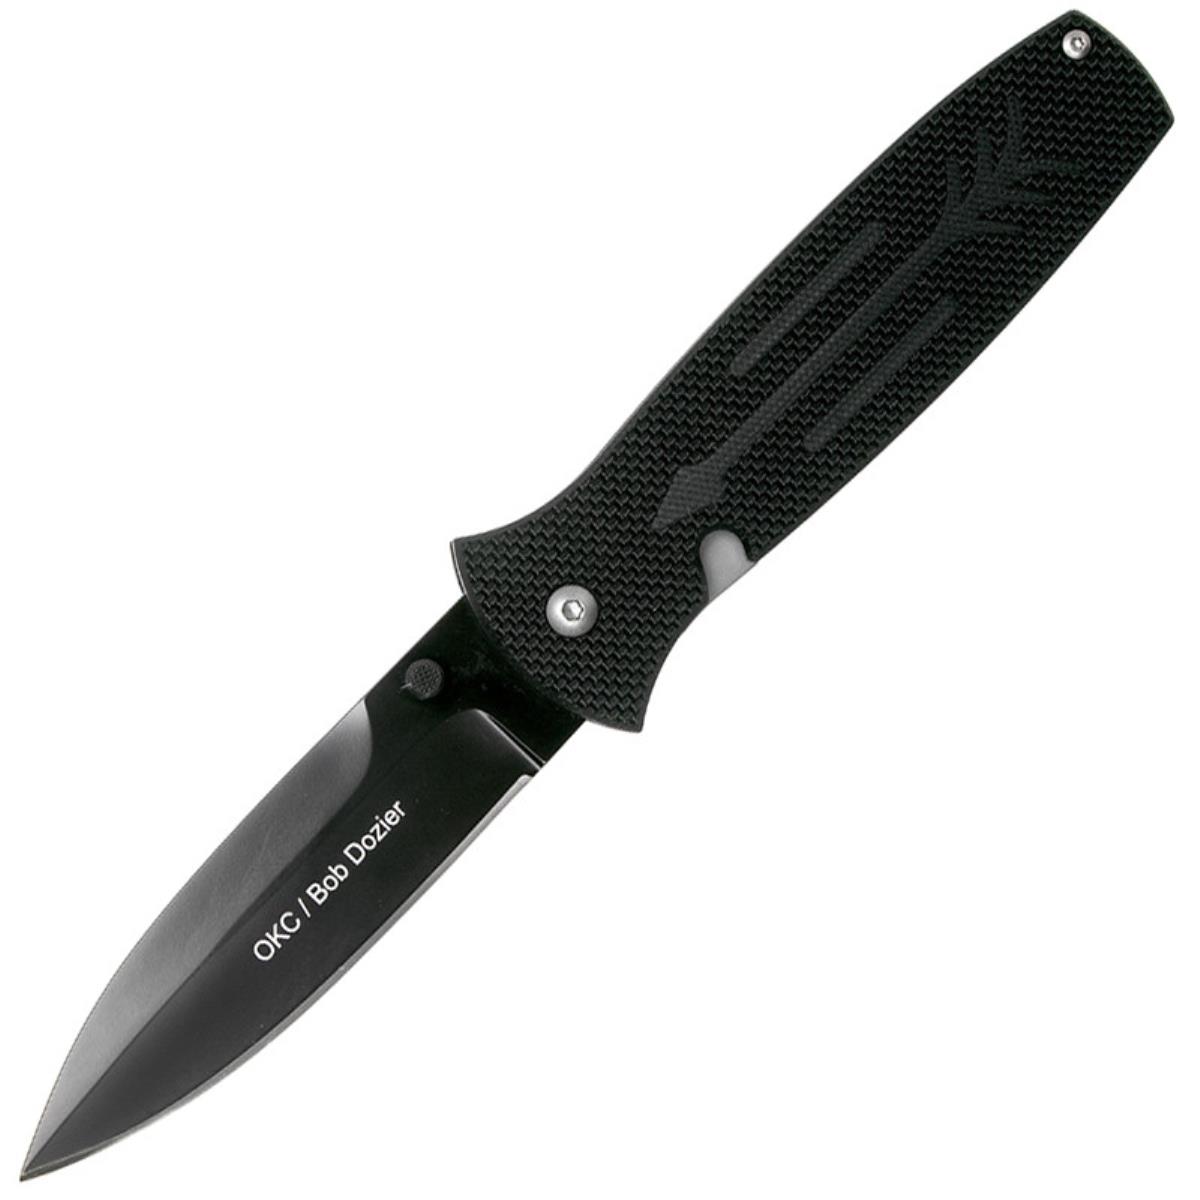 Нож OKC Dozier Arrow складн.,чёрная рукоять, G10, клинок D2, чёрное покрытие (9101)  ONTARIO нож rat ii складн чёрная нейлоновая рукоять клинок aus8 чёрное покрытие 8861 ontario